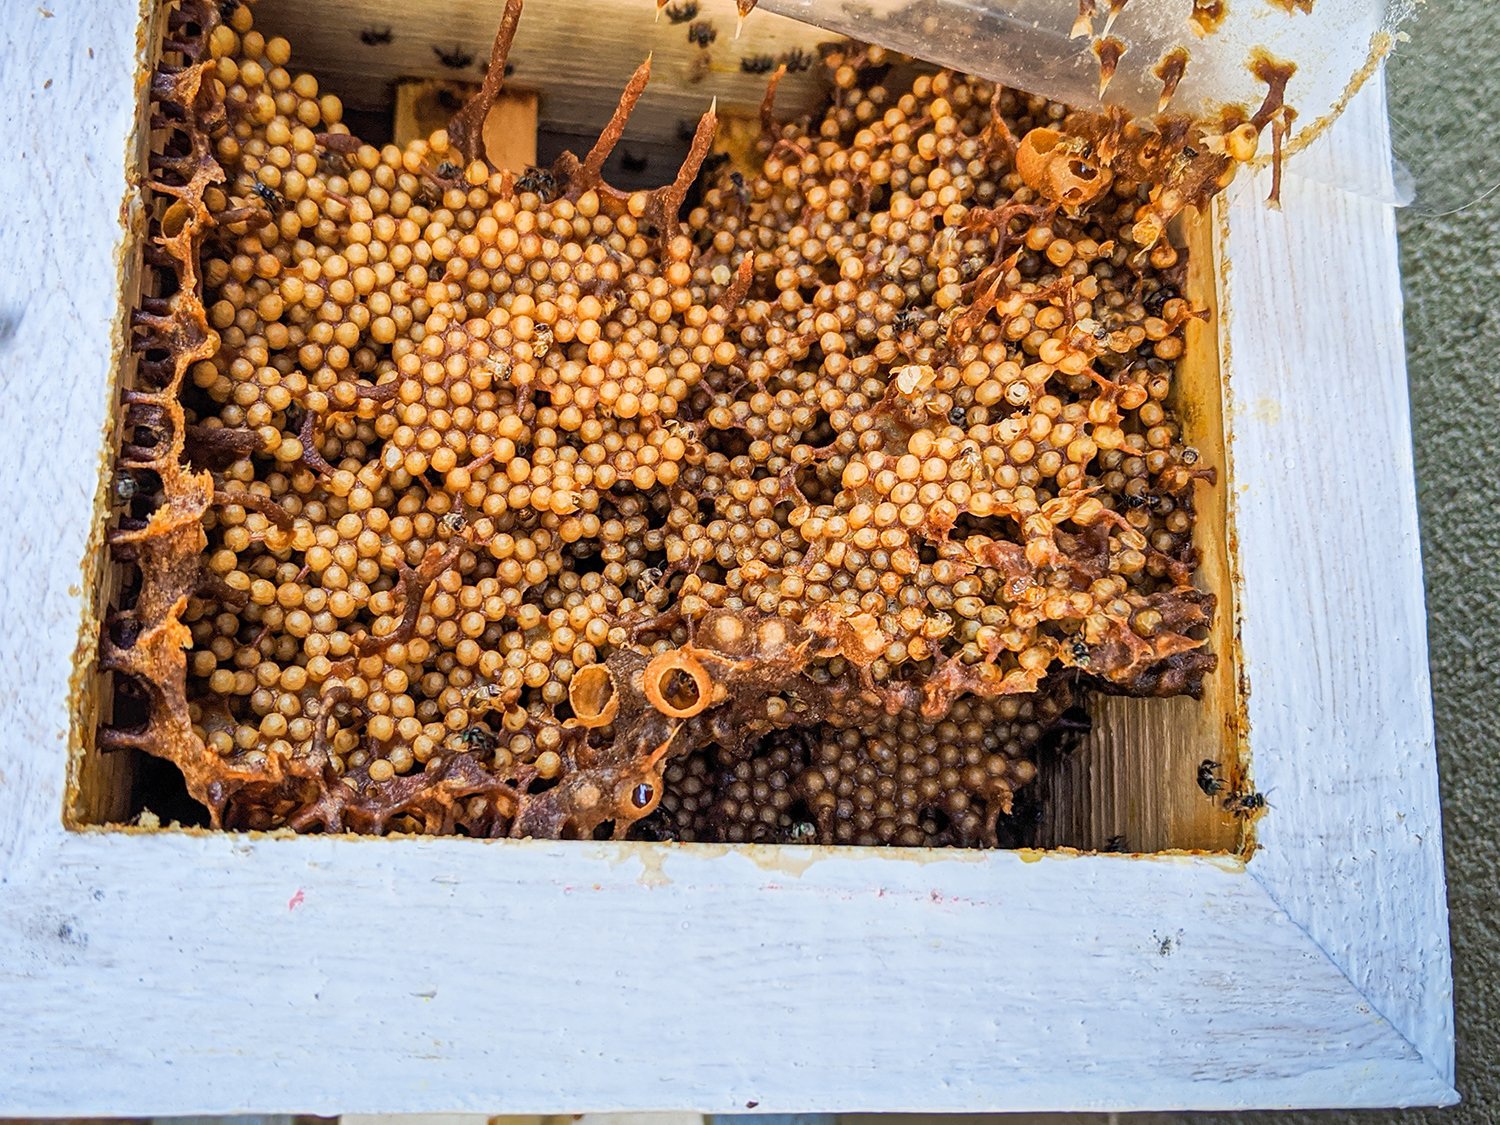 HIEP HOI DUA BEN TREChâu Thành Mô hình nuôi ong mật đang mở ra hướng  thoát nghèo cho nông dân